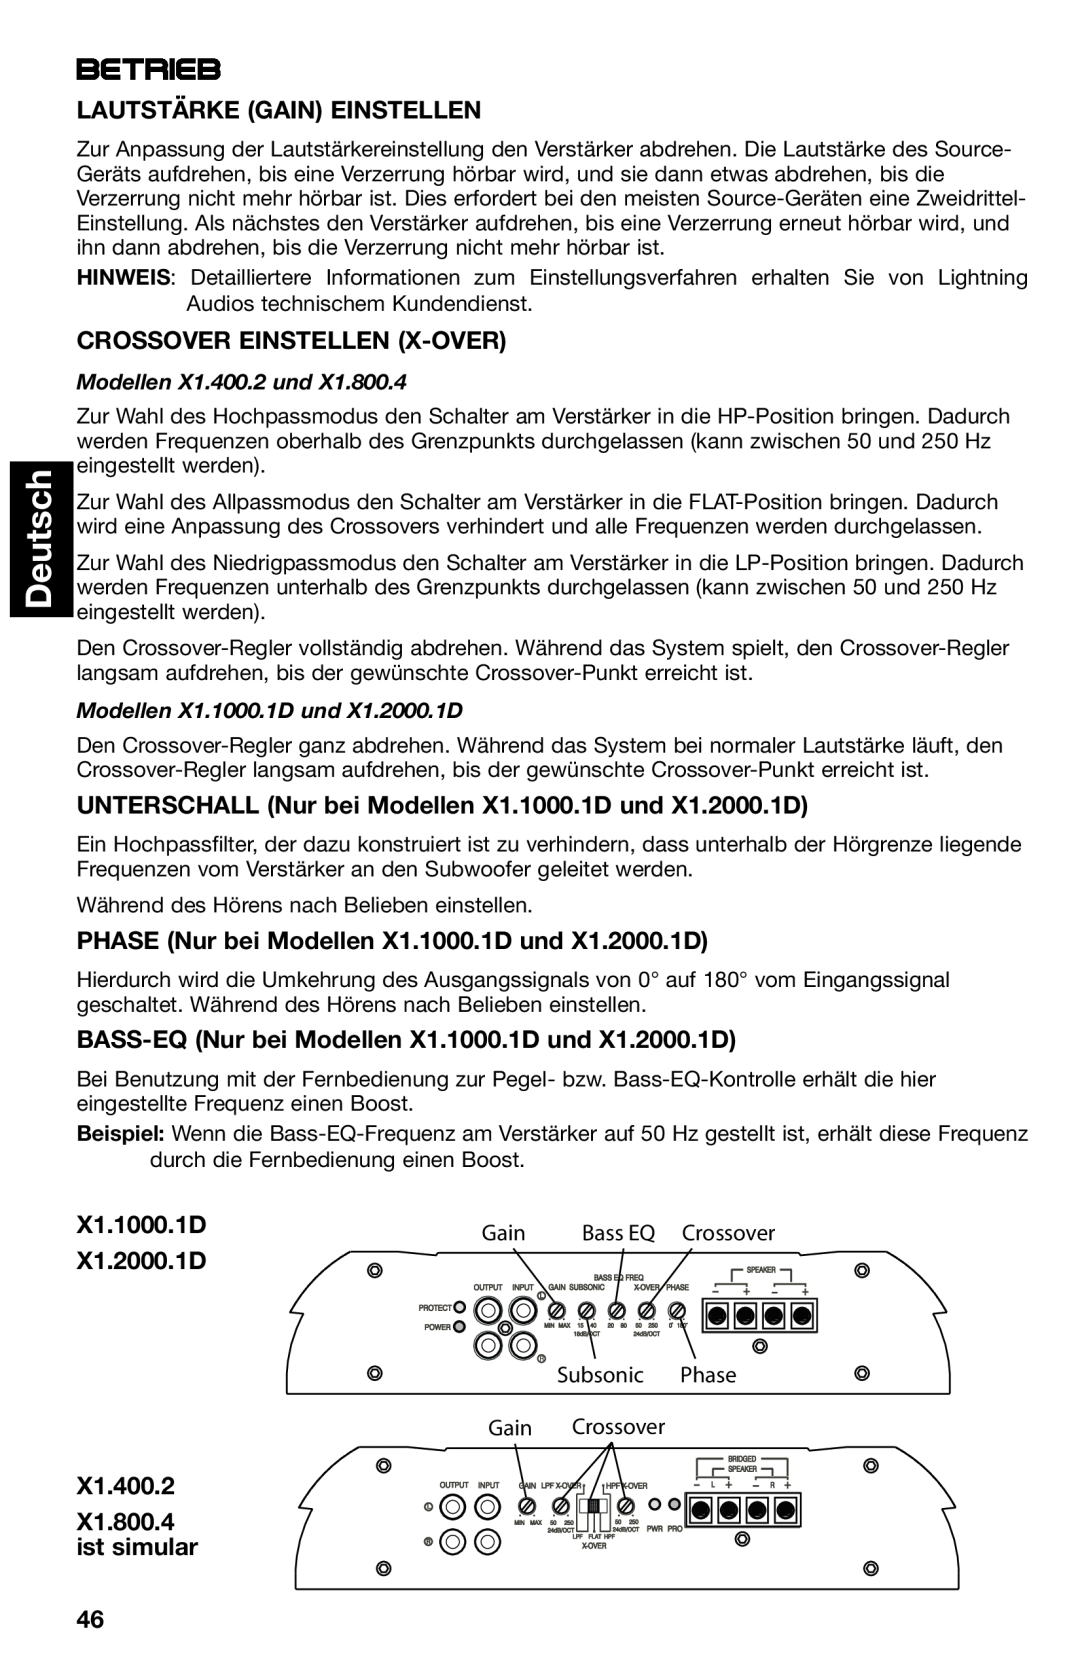 Lightning Audio X1.2000.1D, X1.800.4 Betrieb, Deutsch, Lautstärke Gain Einstellen, Crossover Einstellen X-Over, X1.1000.1D 